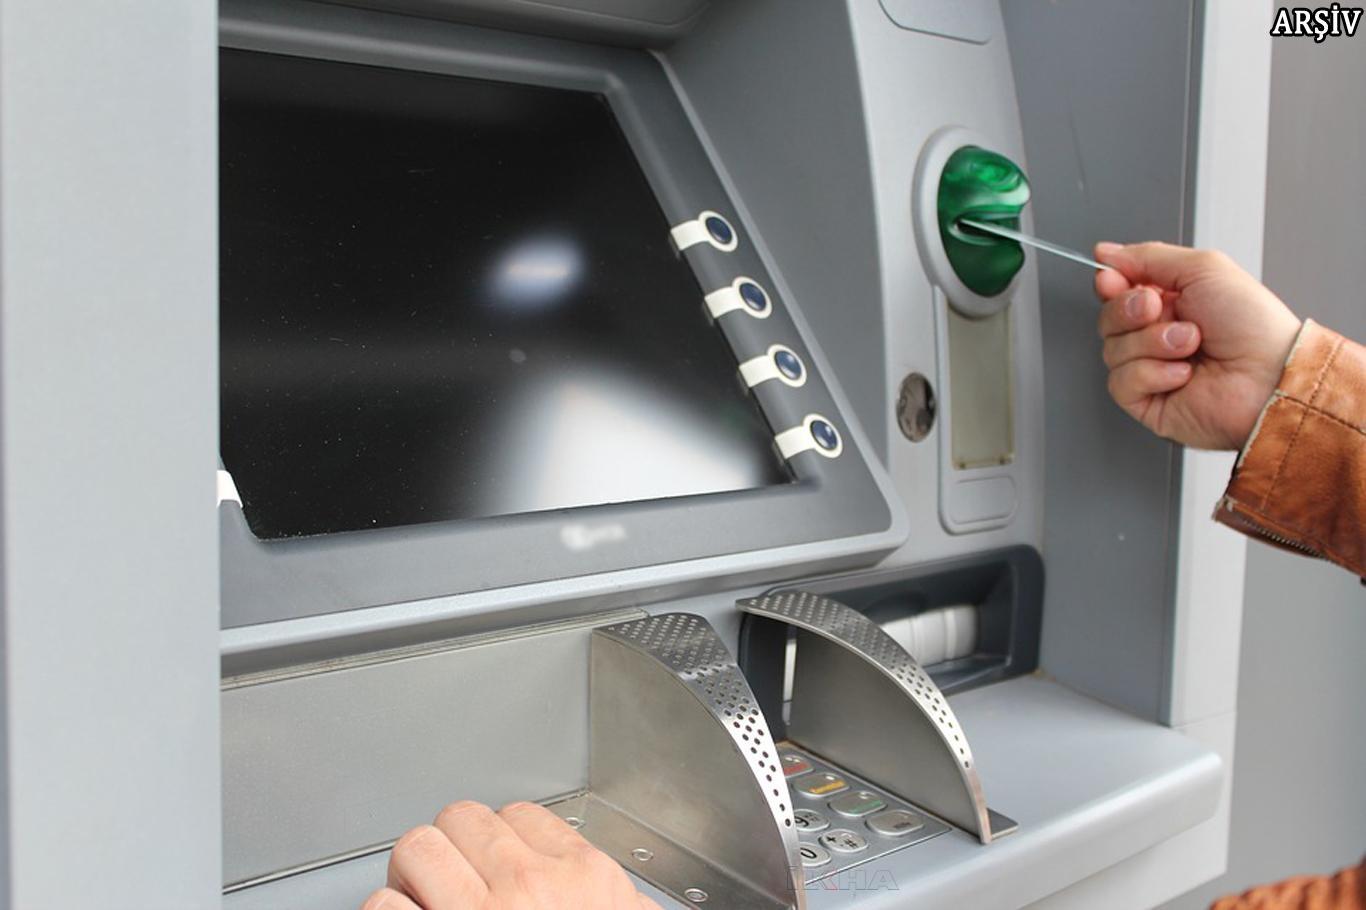 Adana'da ATM'de kart kopyalayan düzenek bulundu